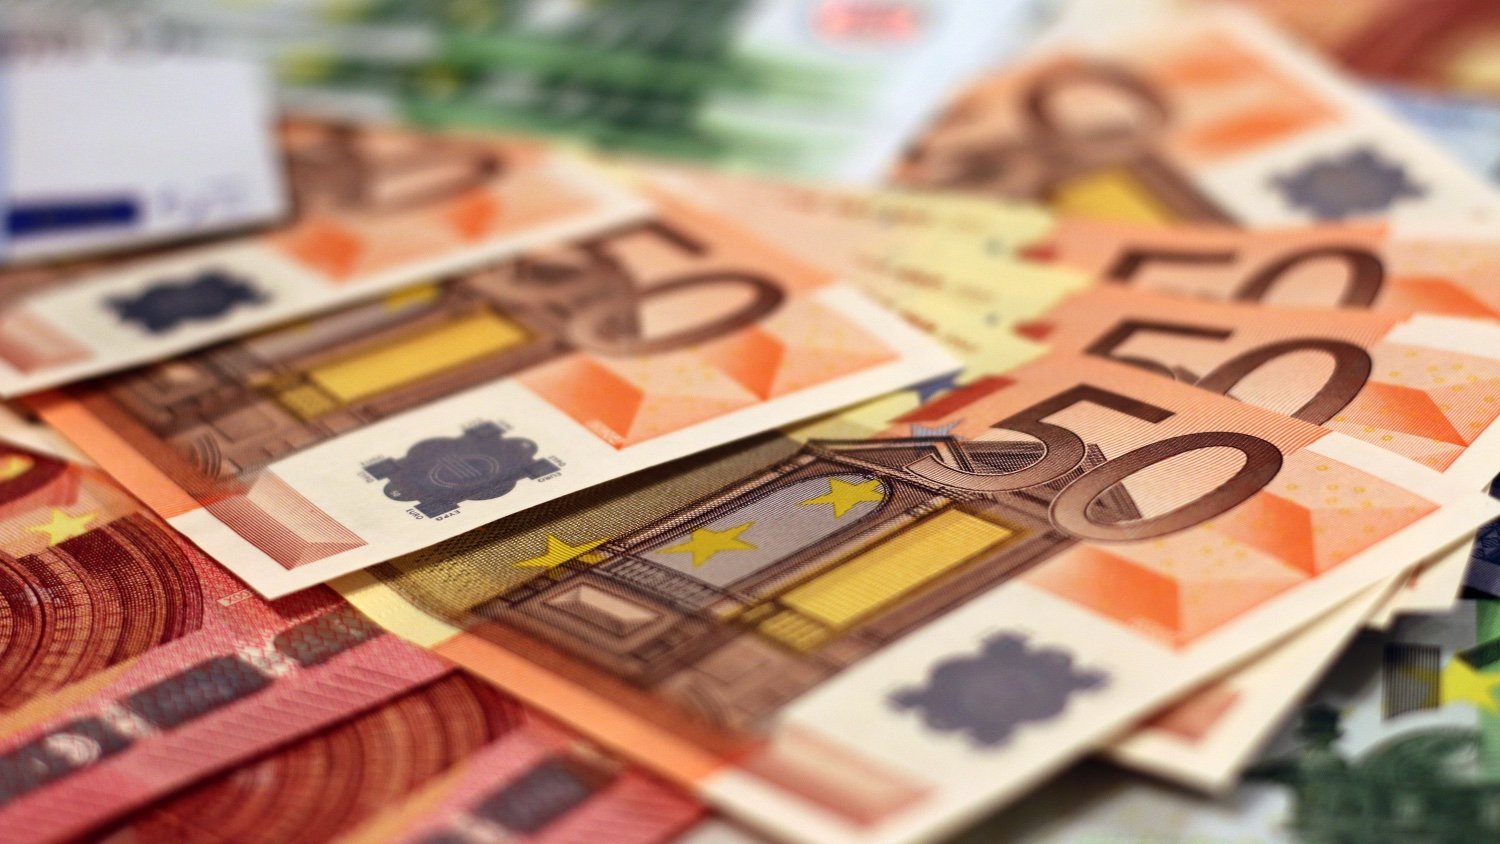 El nuevo billete de 20 euros se podrá falsificar, Pymes, Territorio Pyme